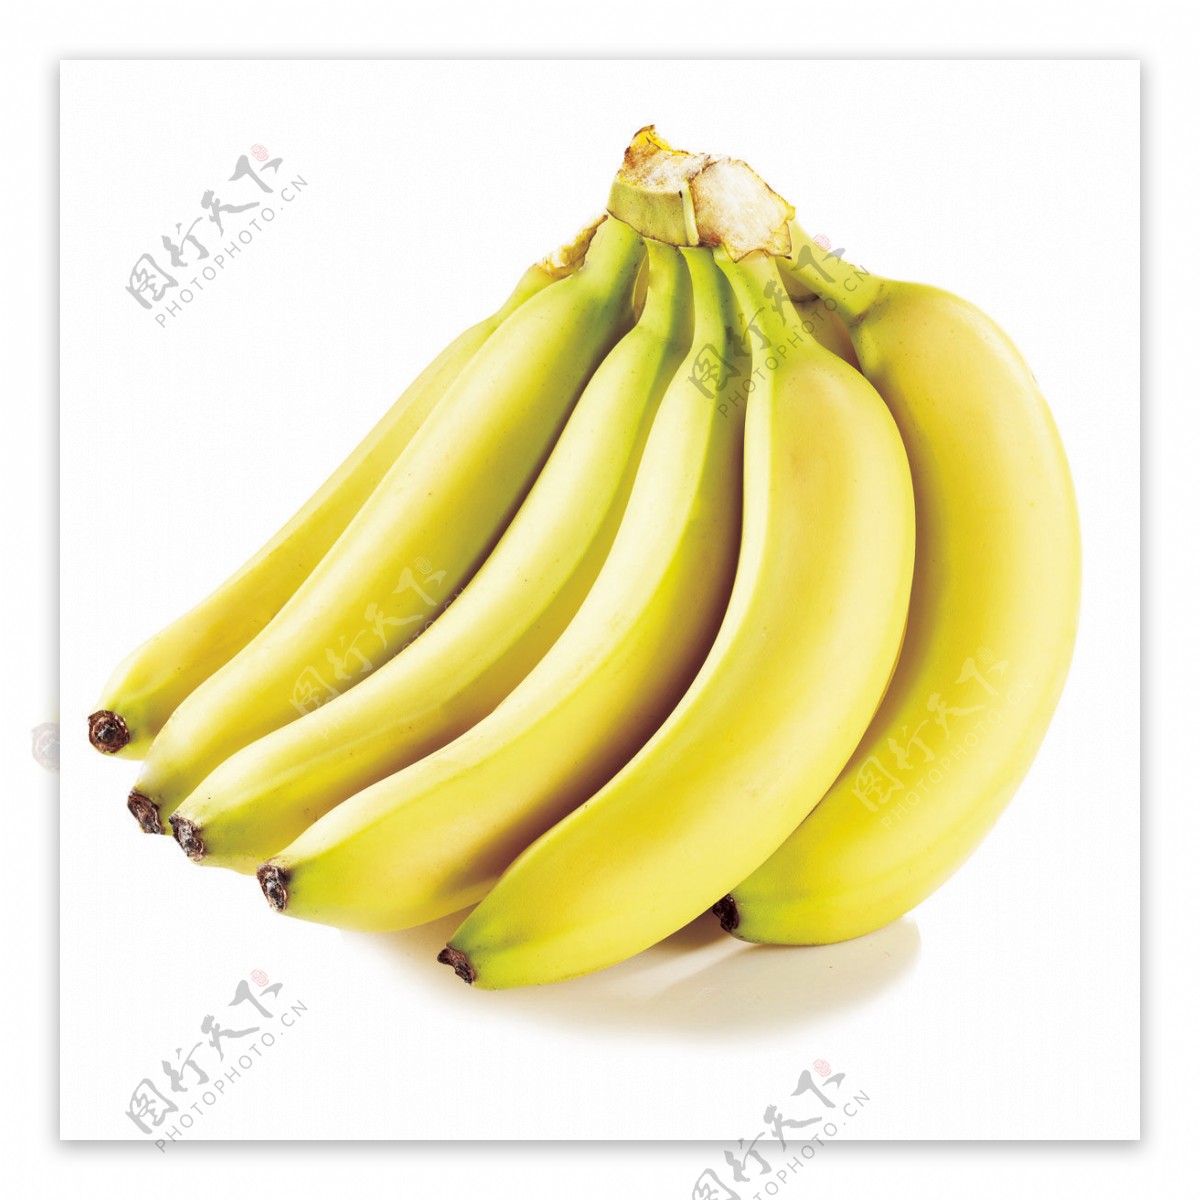 进口菲律宾香蕉图片